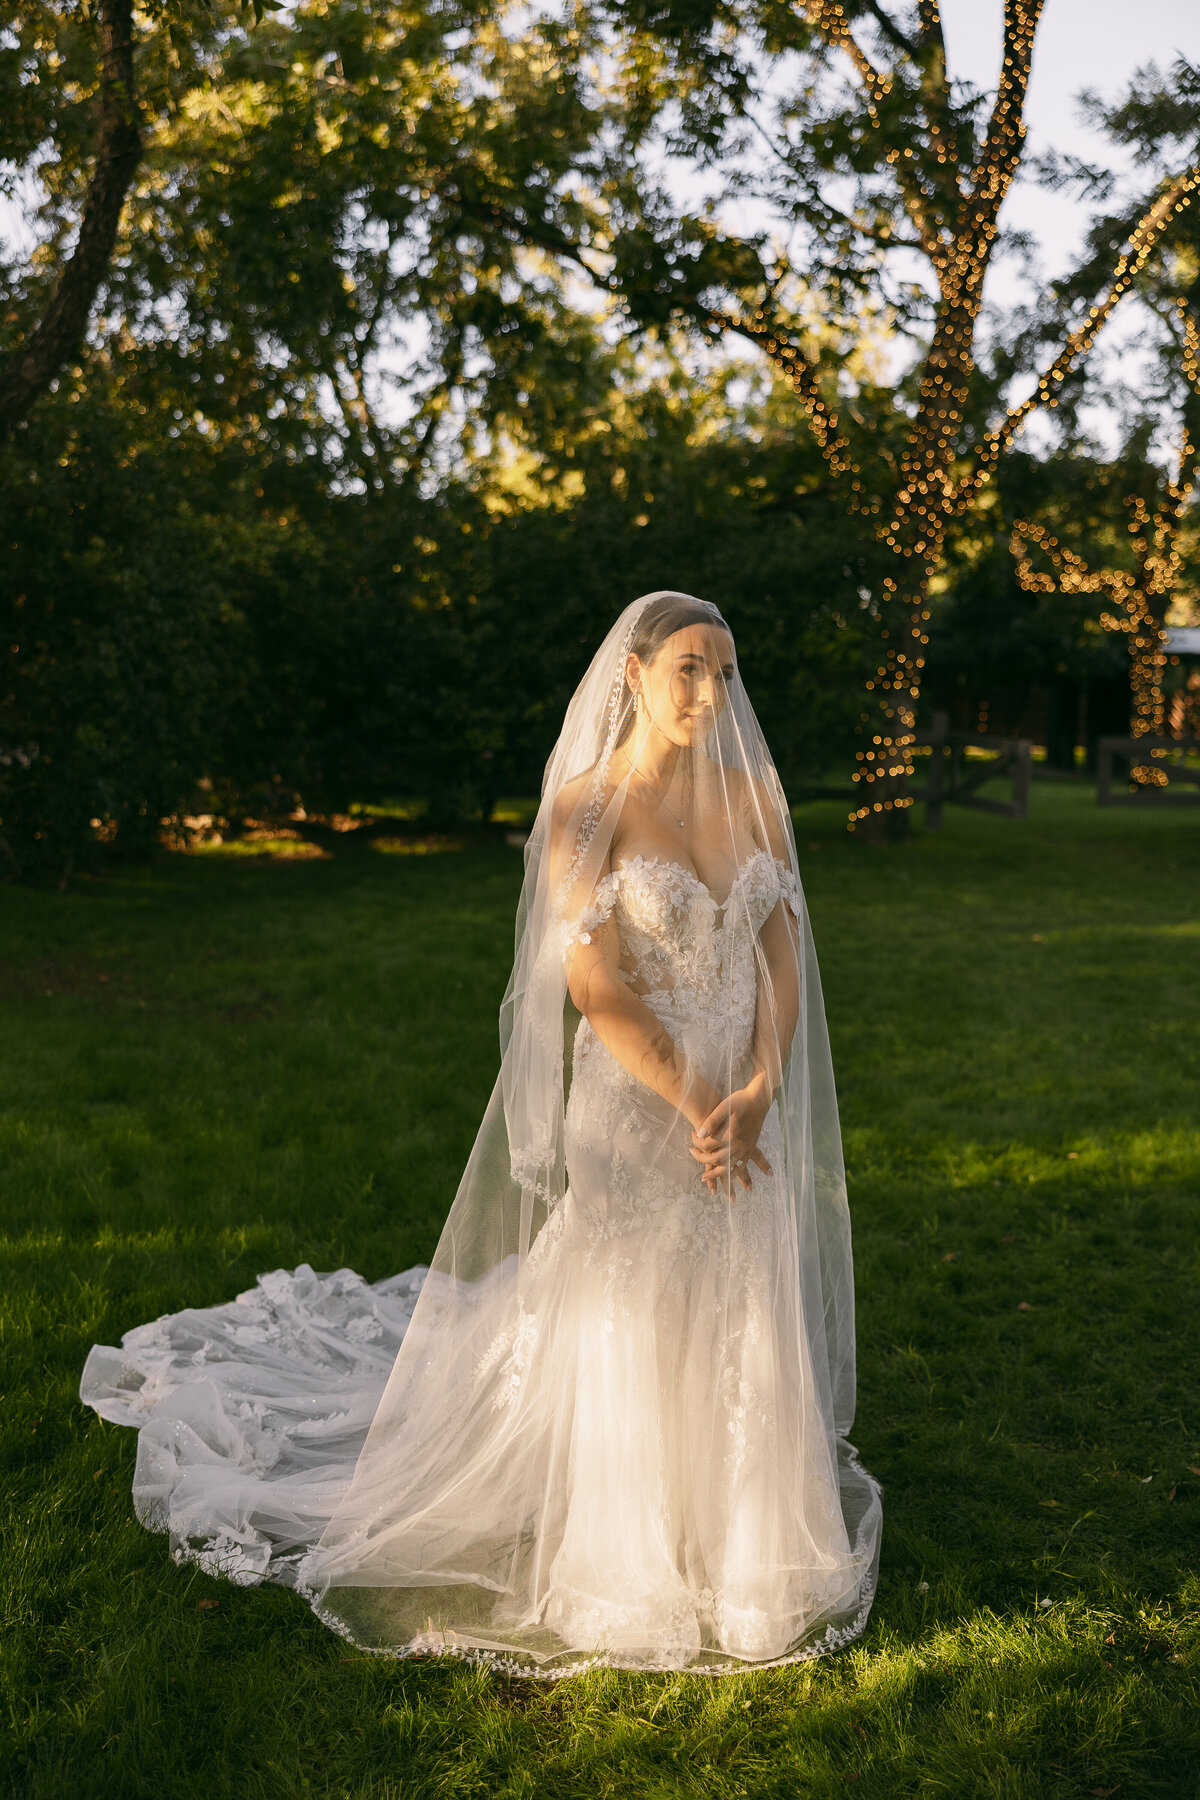 A bride standing in an open field.